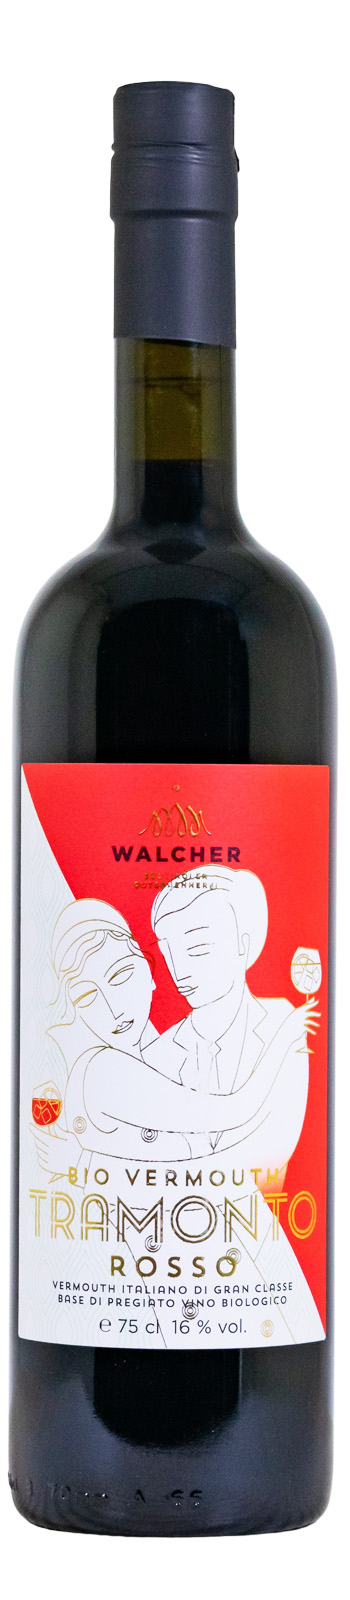 Walcher Tramonto Rosso Vermouth - 0,75L 16% vol